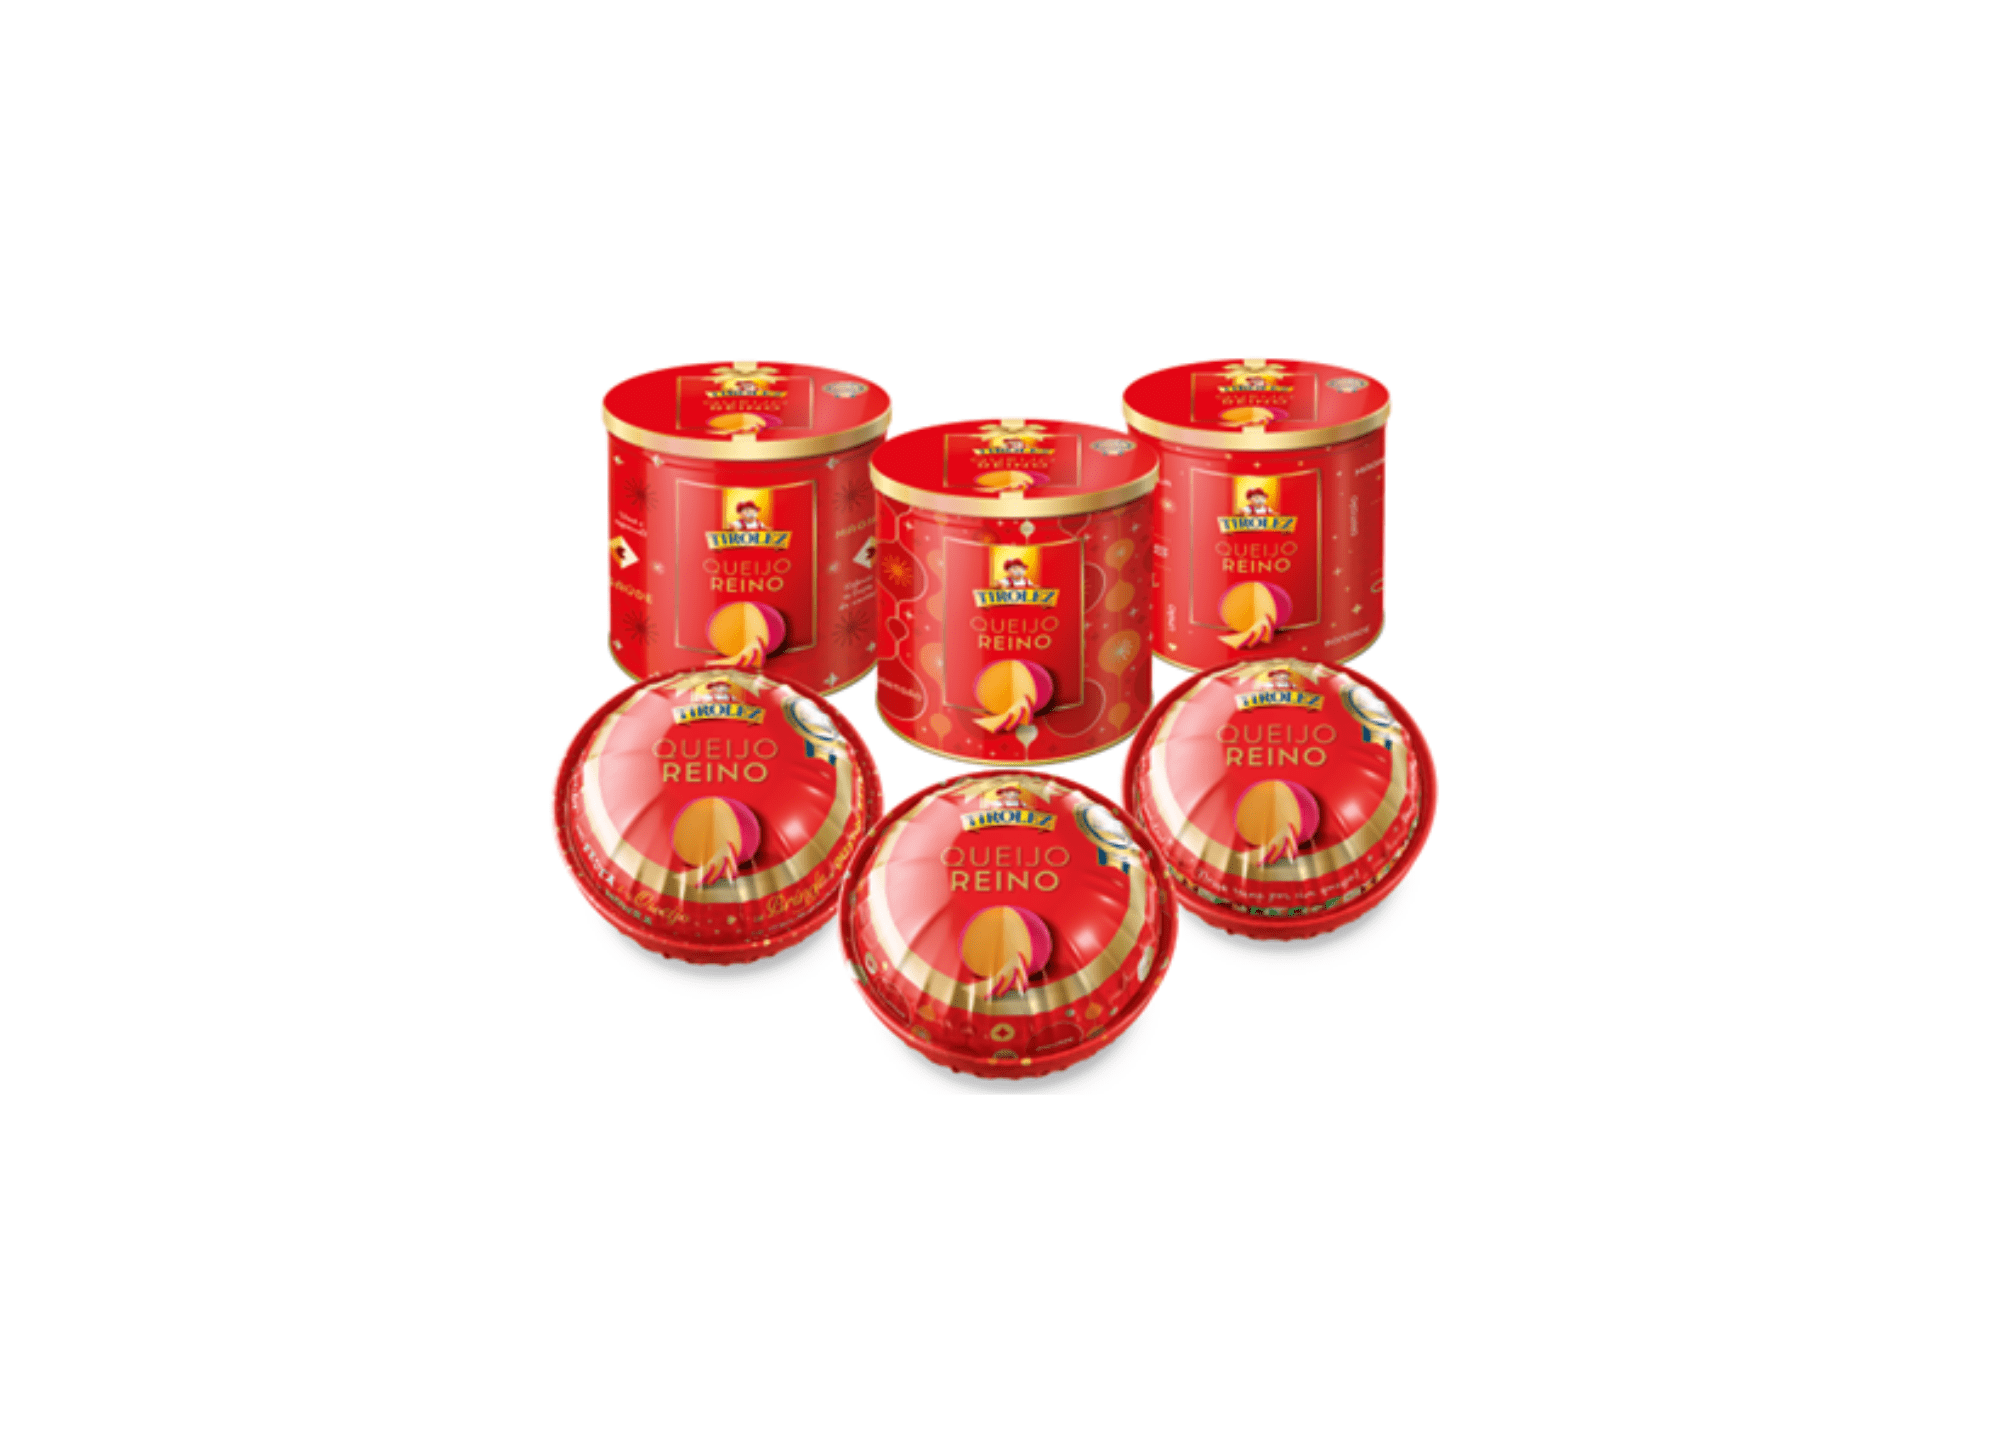 Featured image for “Tirolez apresenta latas presenteáveis de Queijo Reino para o Natal”